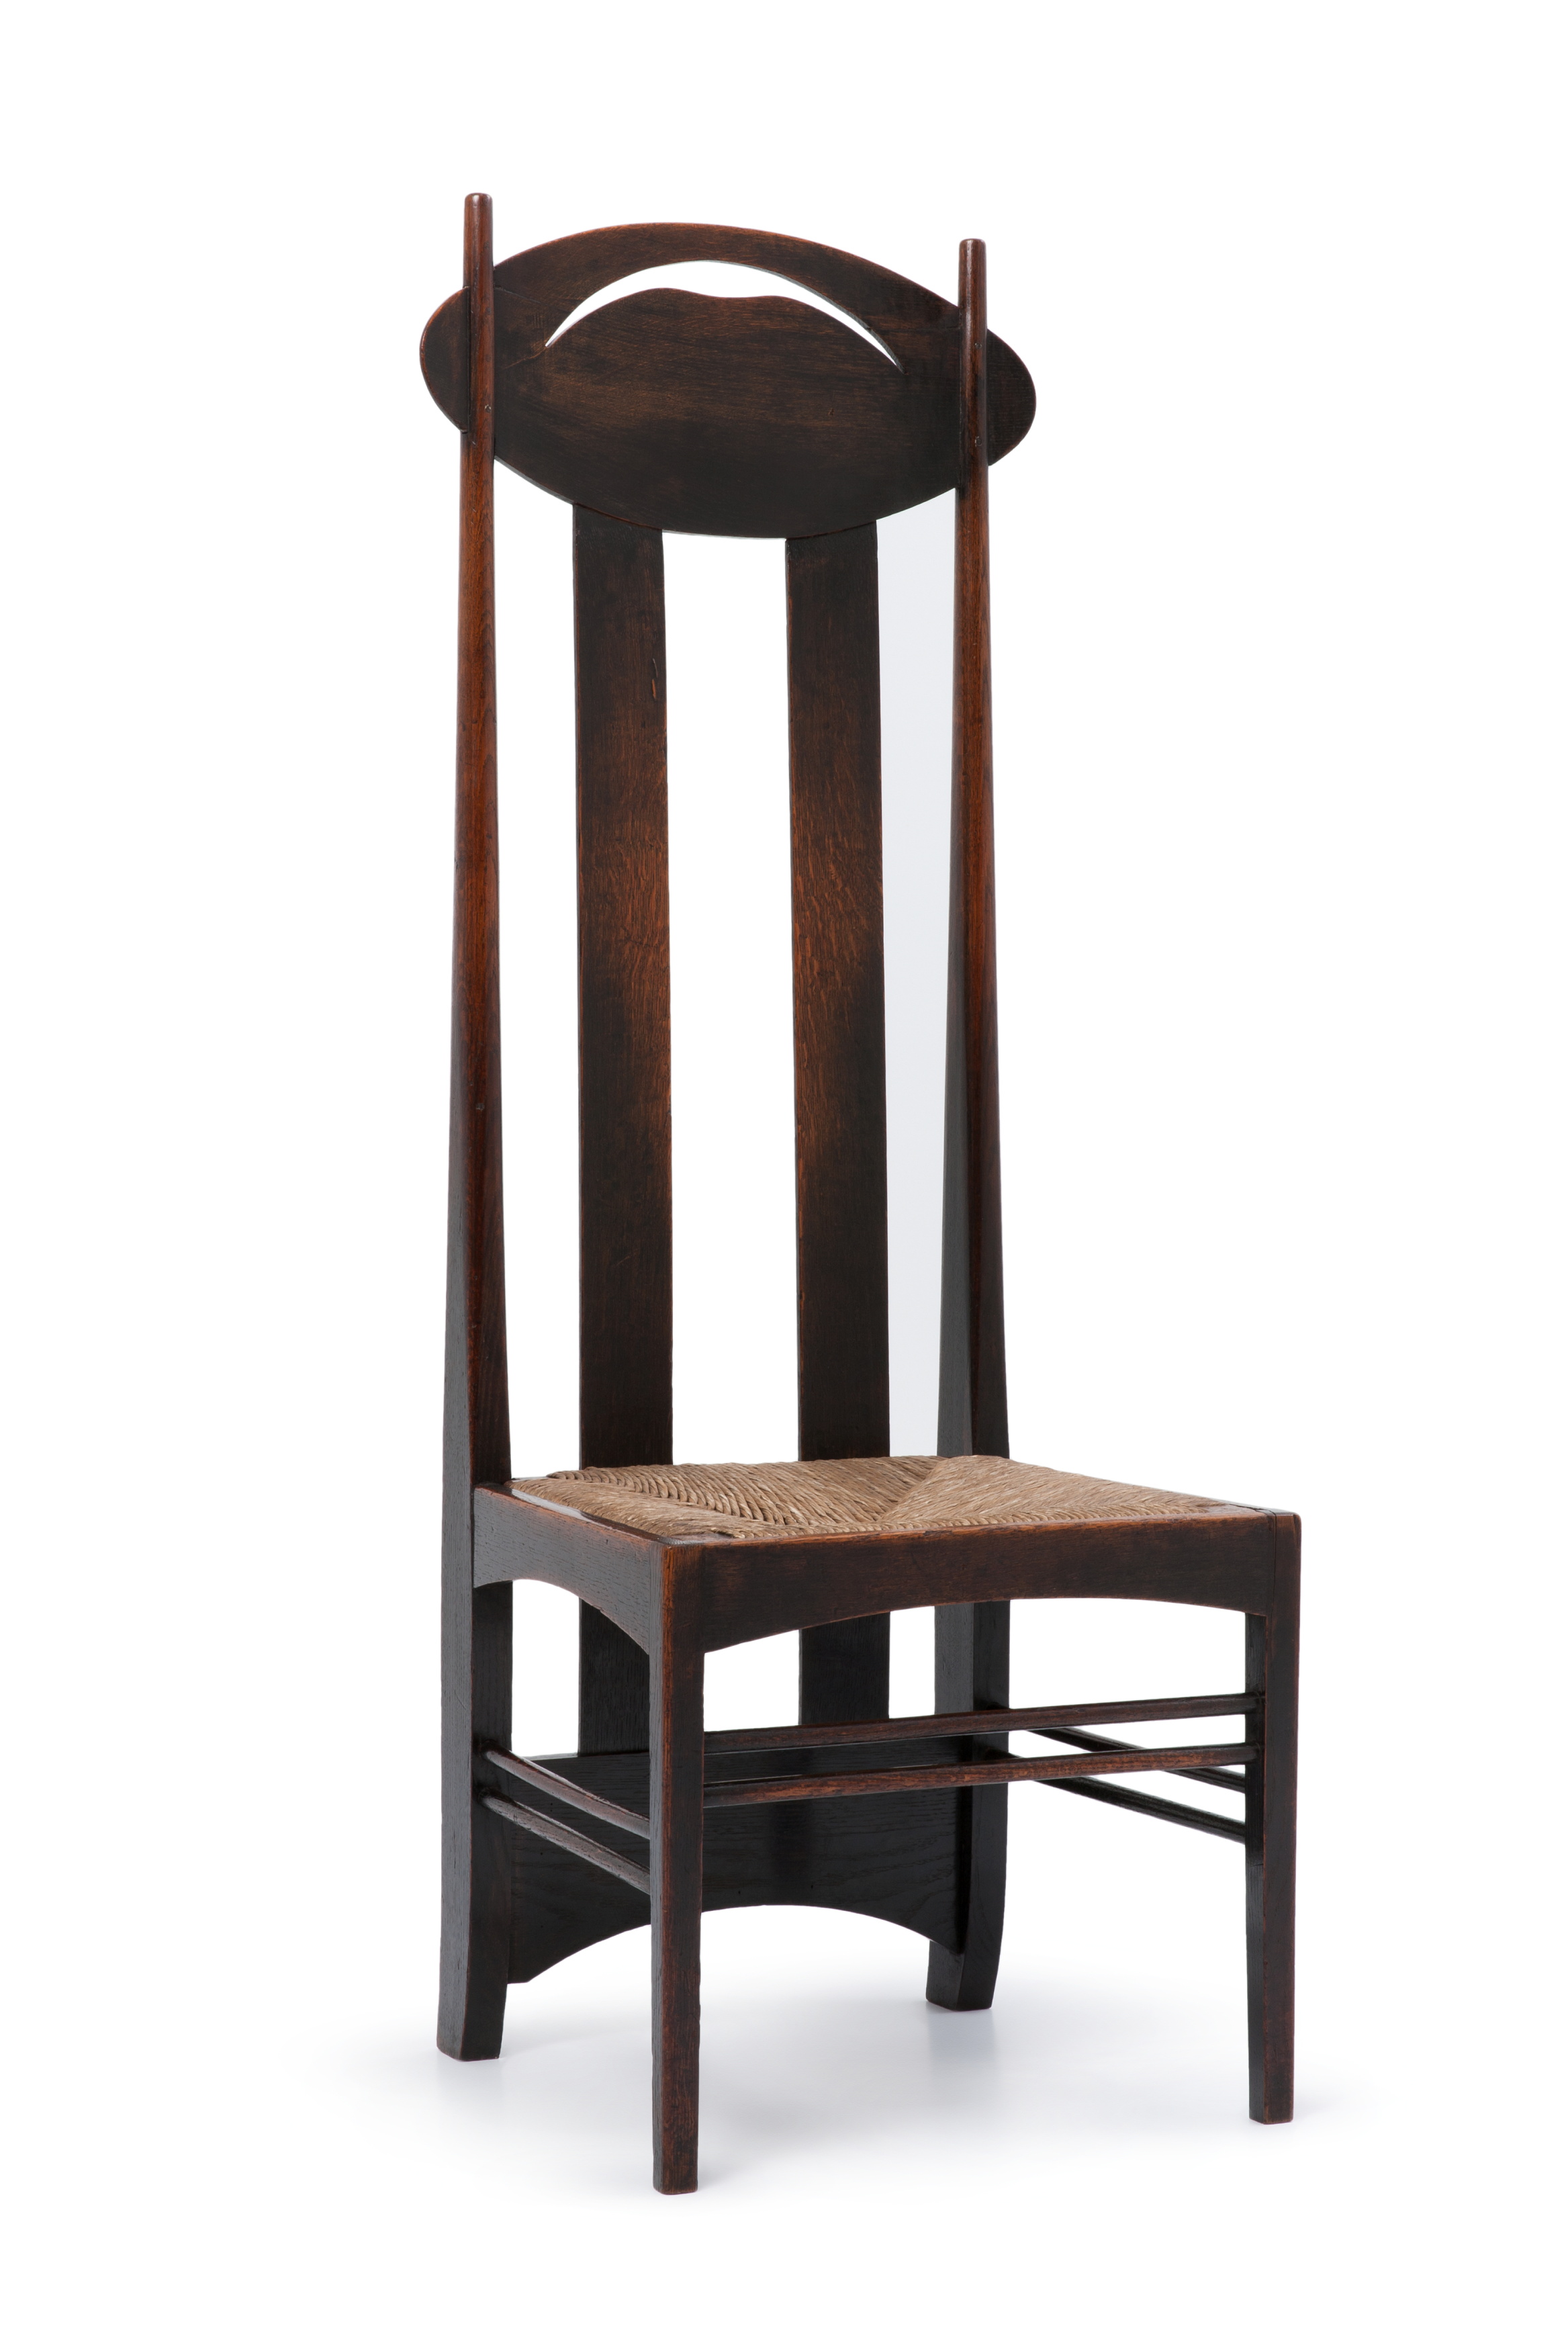 'Argyle' chair by Charles Rennie Mackintosh